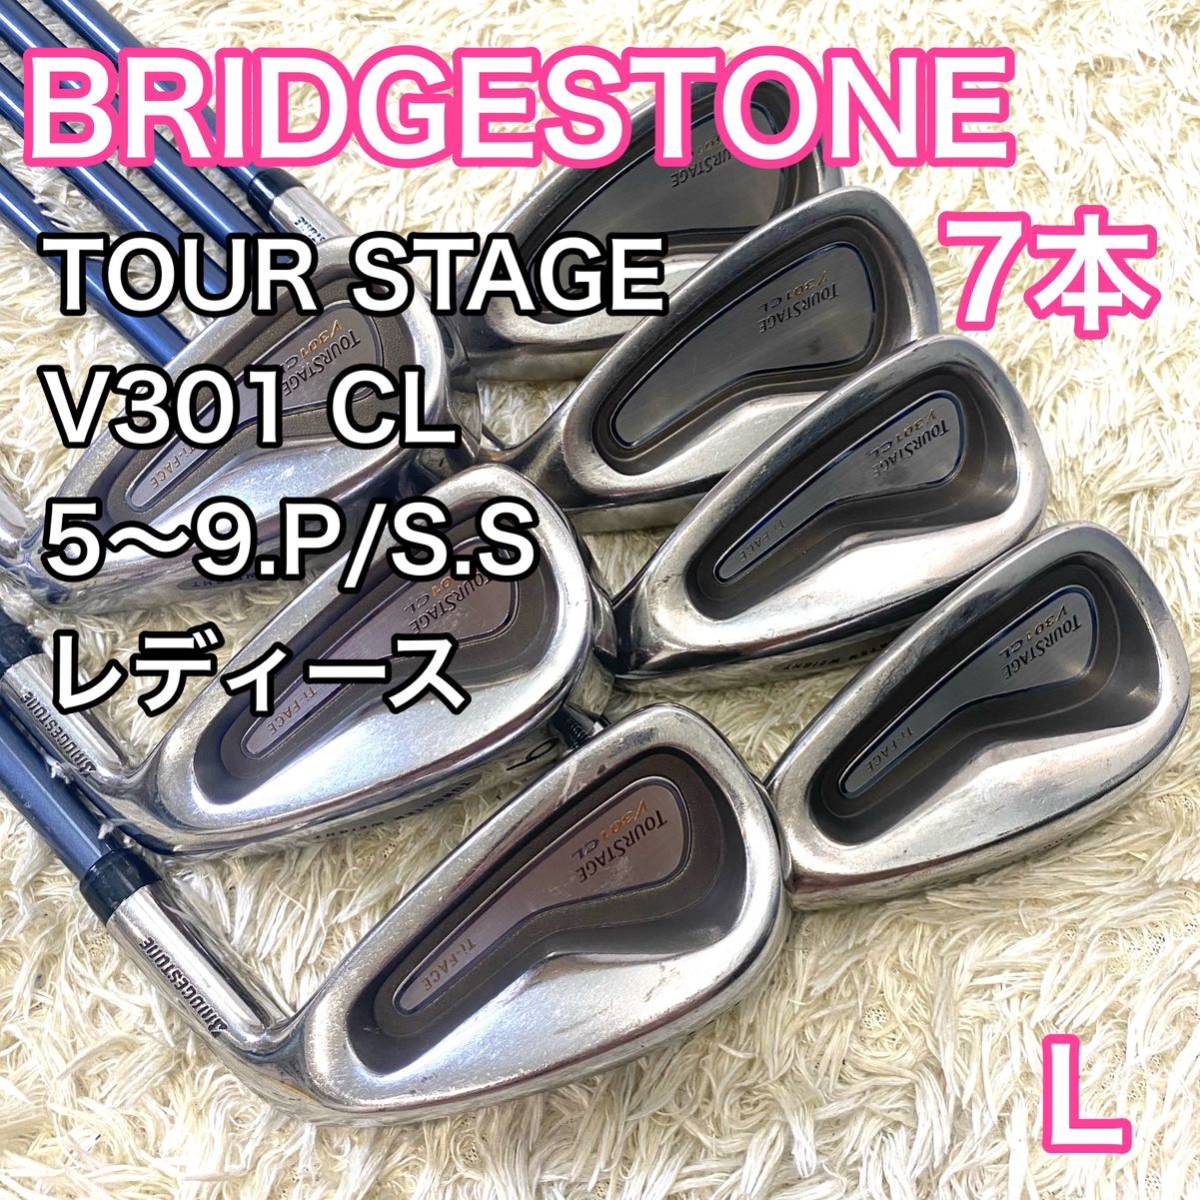 ブリヂストン ツアーステージ CL V301 アイアン レディース 右利き 7本 BRIDGESTONE TOUR STAGE フレックスL